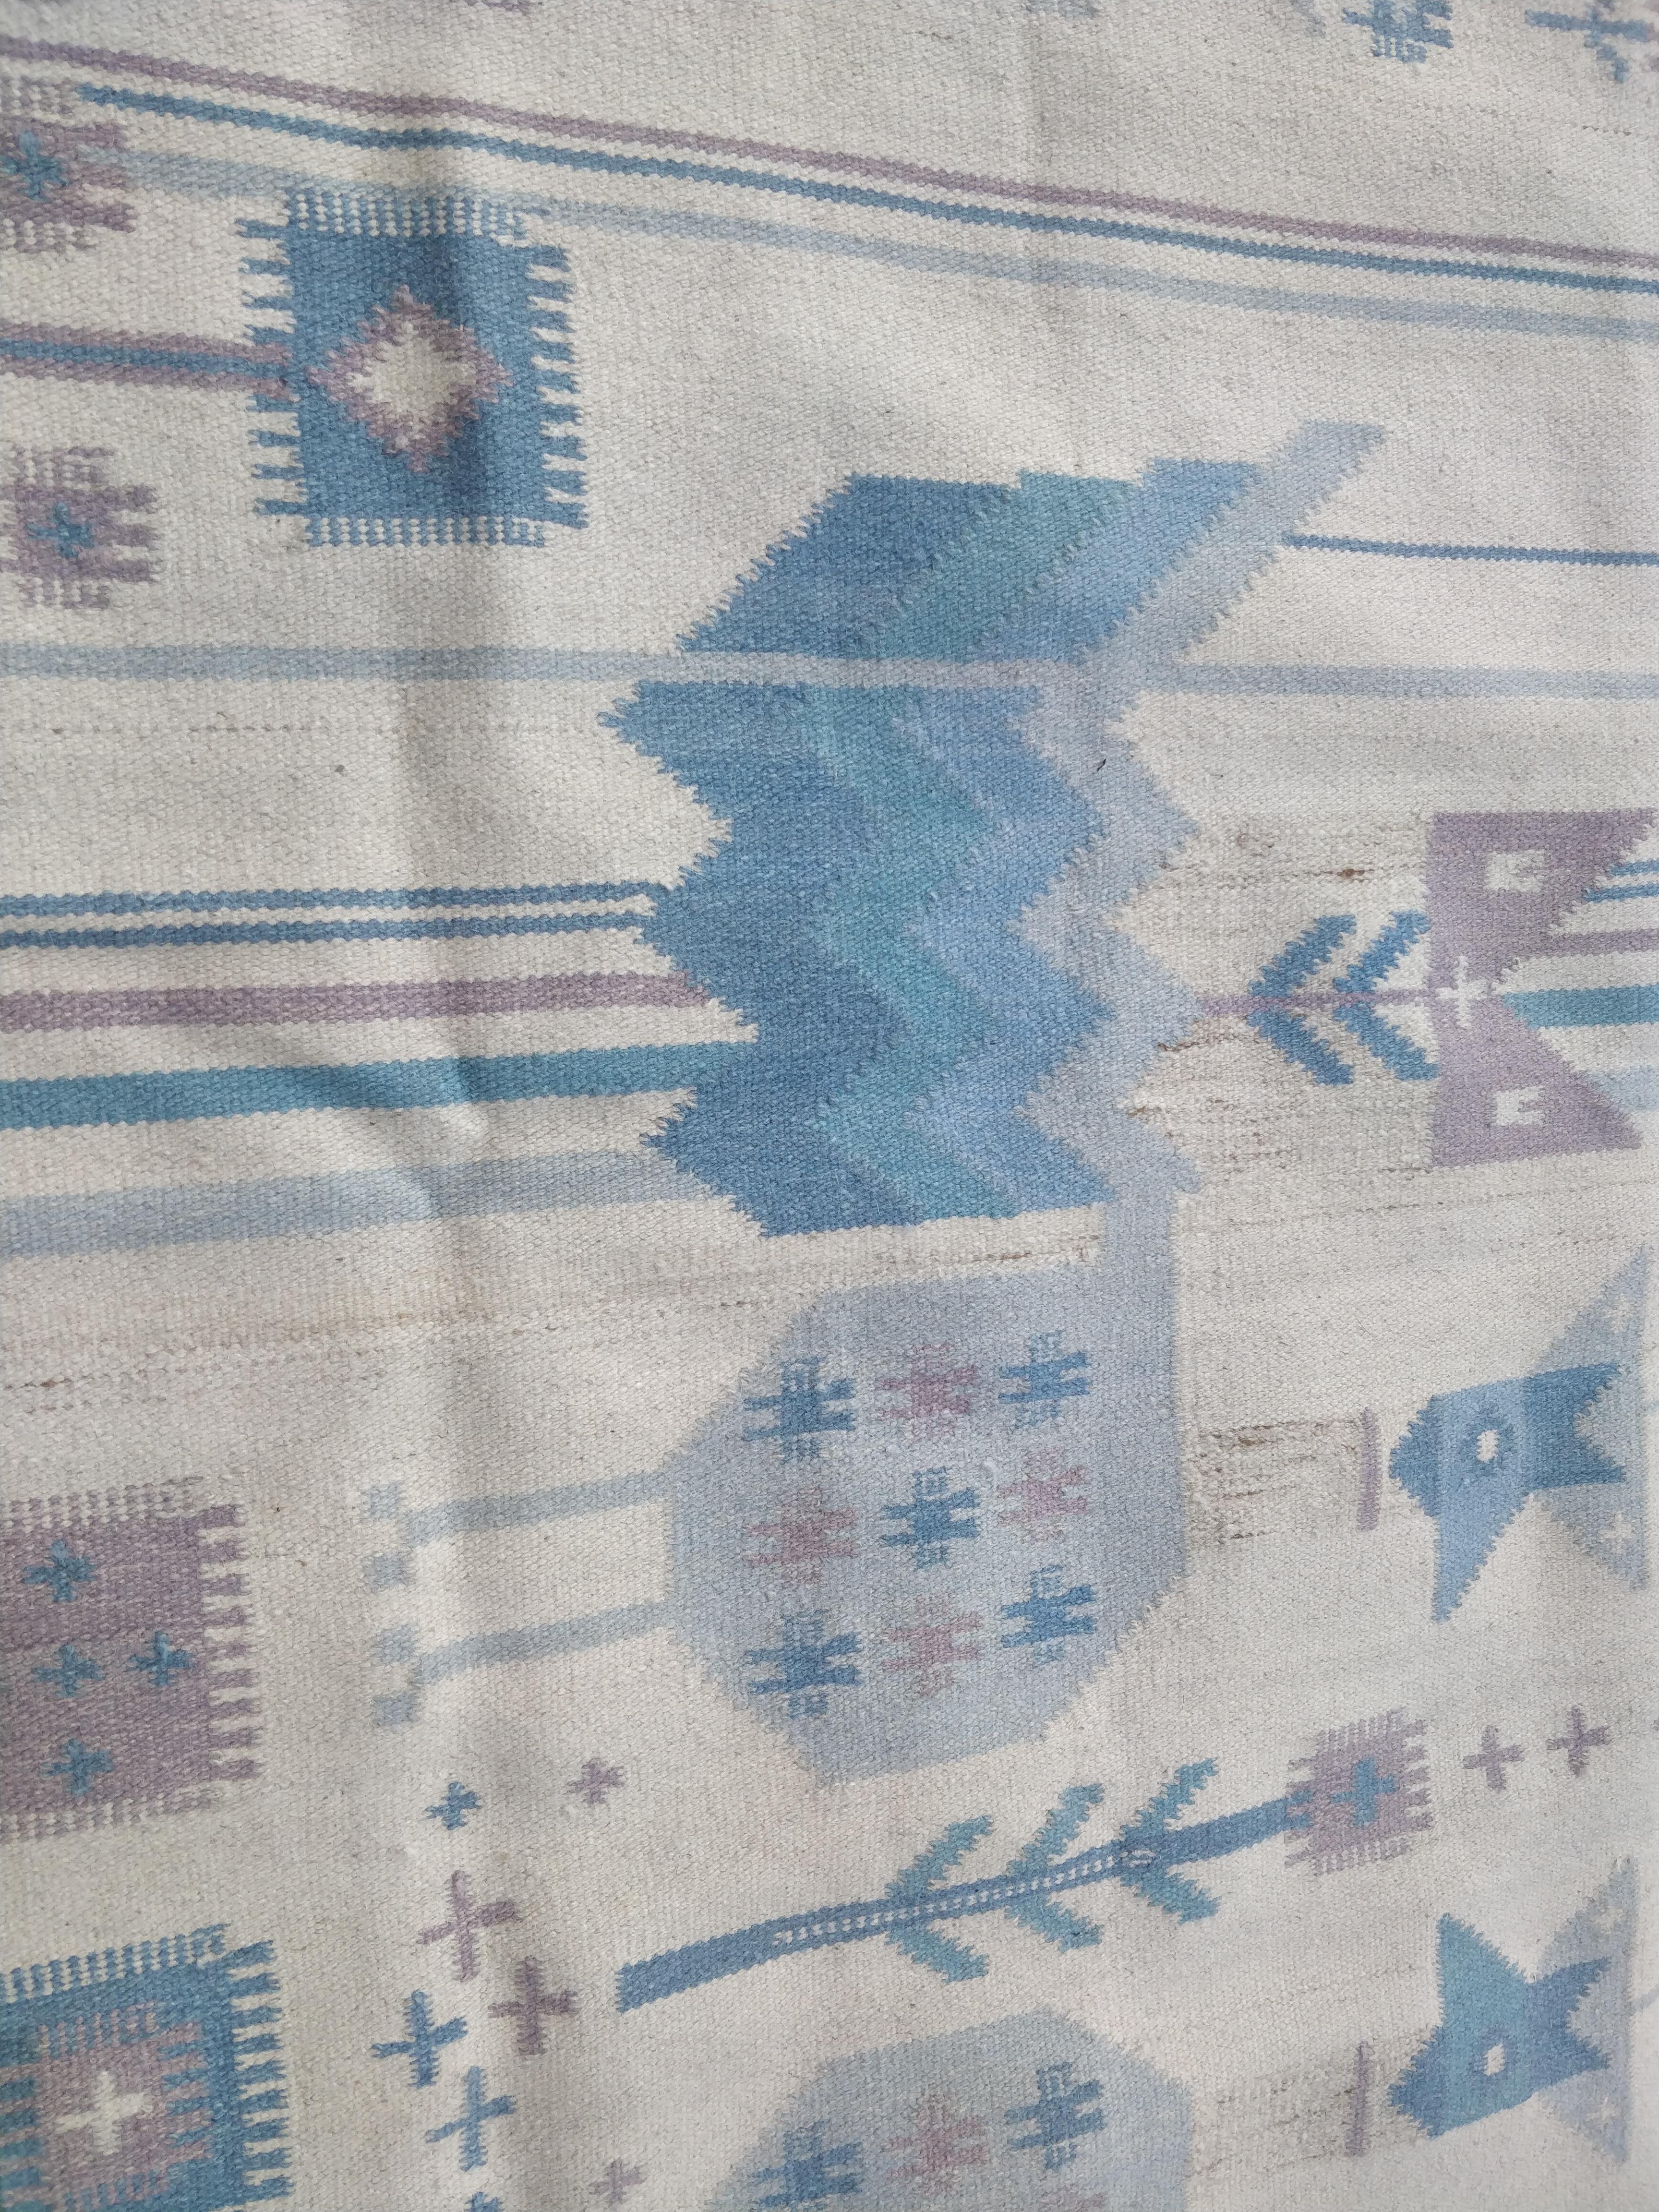 Dieser Wandteppich aus Wolle zeigt ein Design mit stilisierten Vögeln und Blumen in Blautönen. In der rechten unteren Ecke stehen die Initialen des Designers, NE (Németh Éva). Aus den 1970er Jahren.

Éva Németh (1930-2019) war eine ungarische